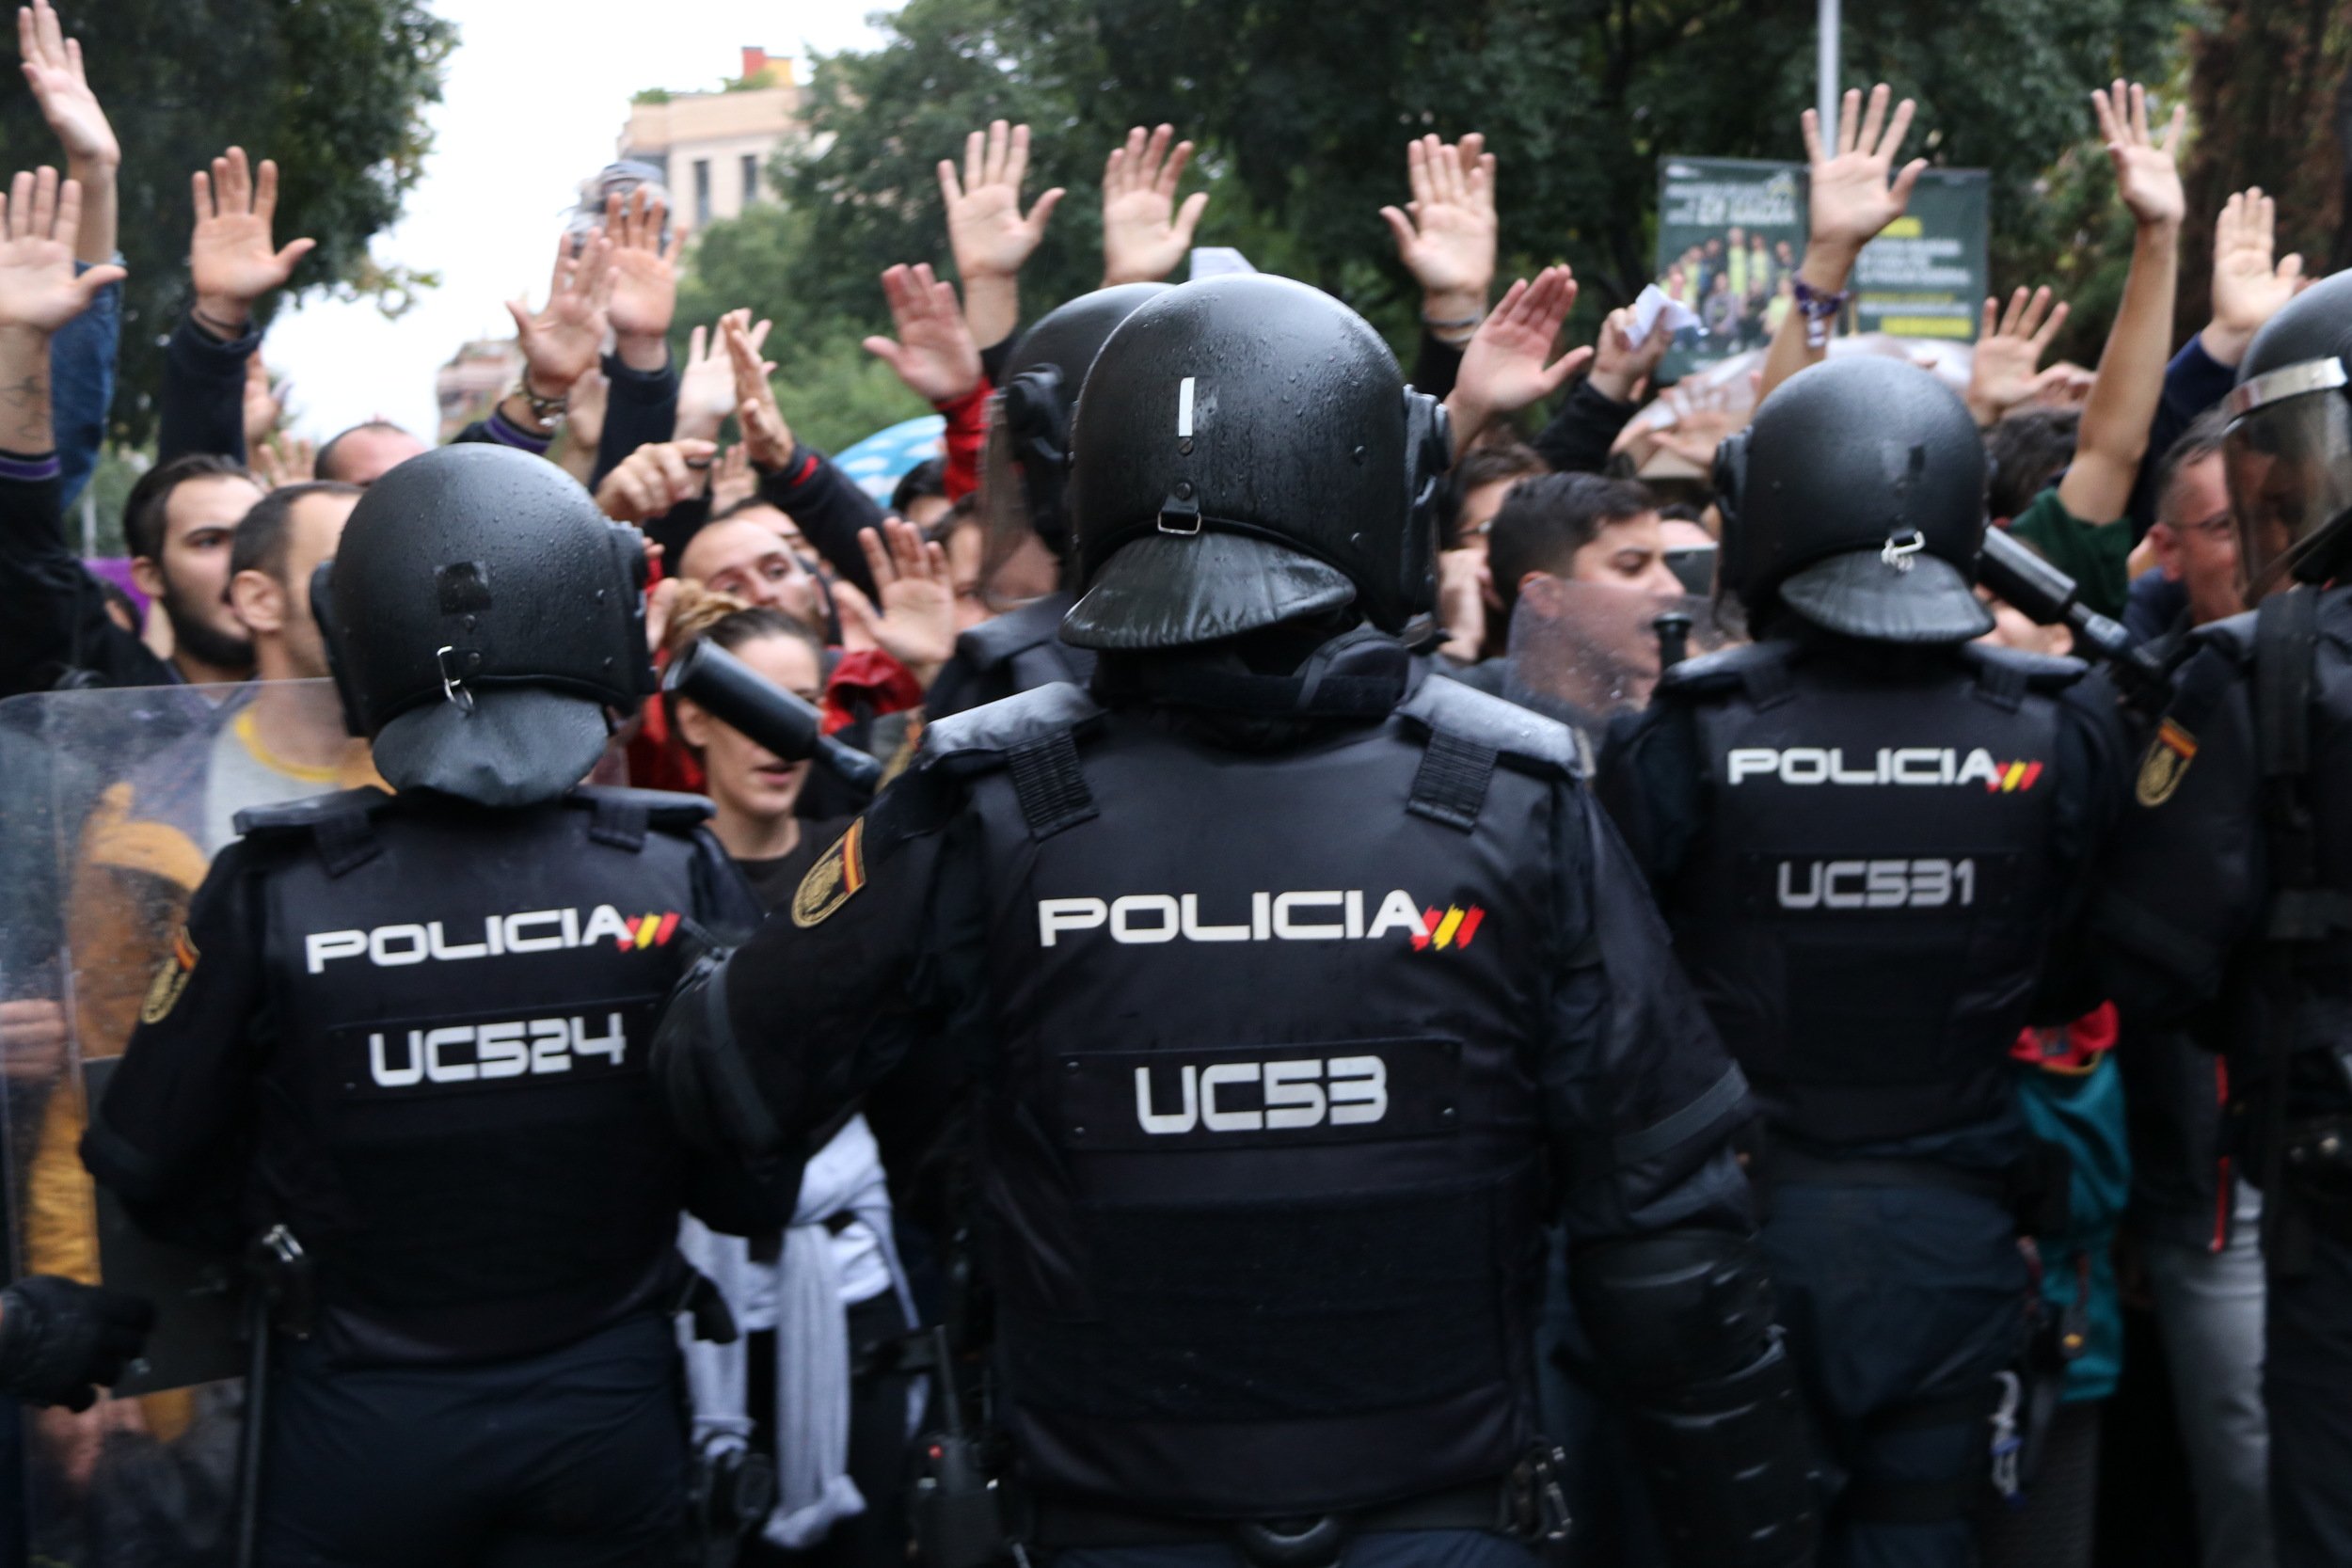 Imputen quatre policies nacionals més per les càrregues de l'1-O a Barcelona